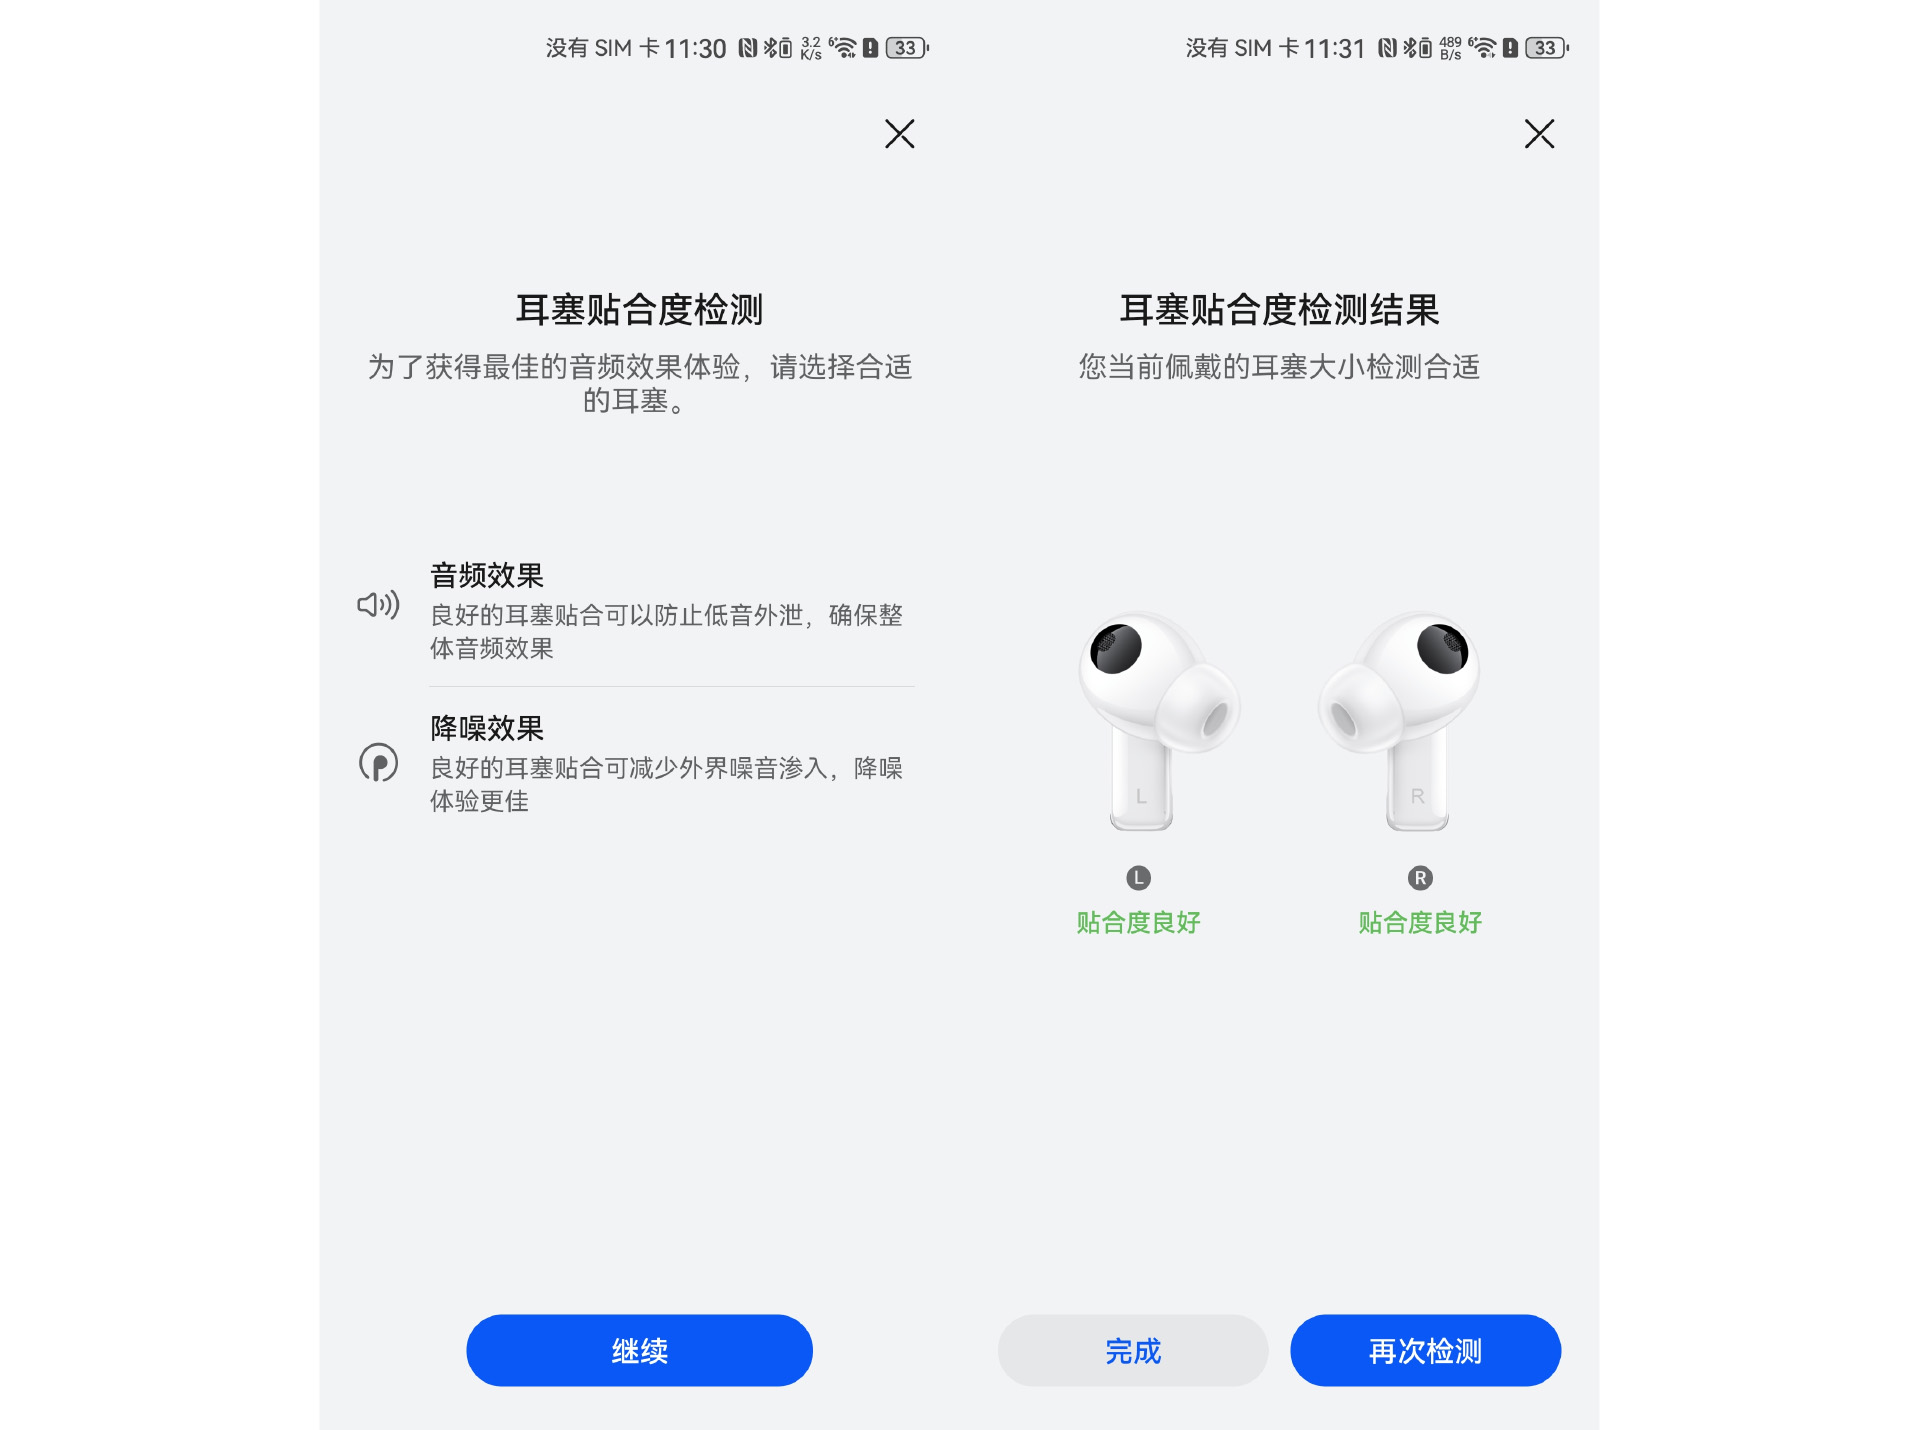 Huawei FreeBuds Pro 3 Review